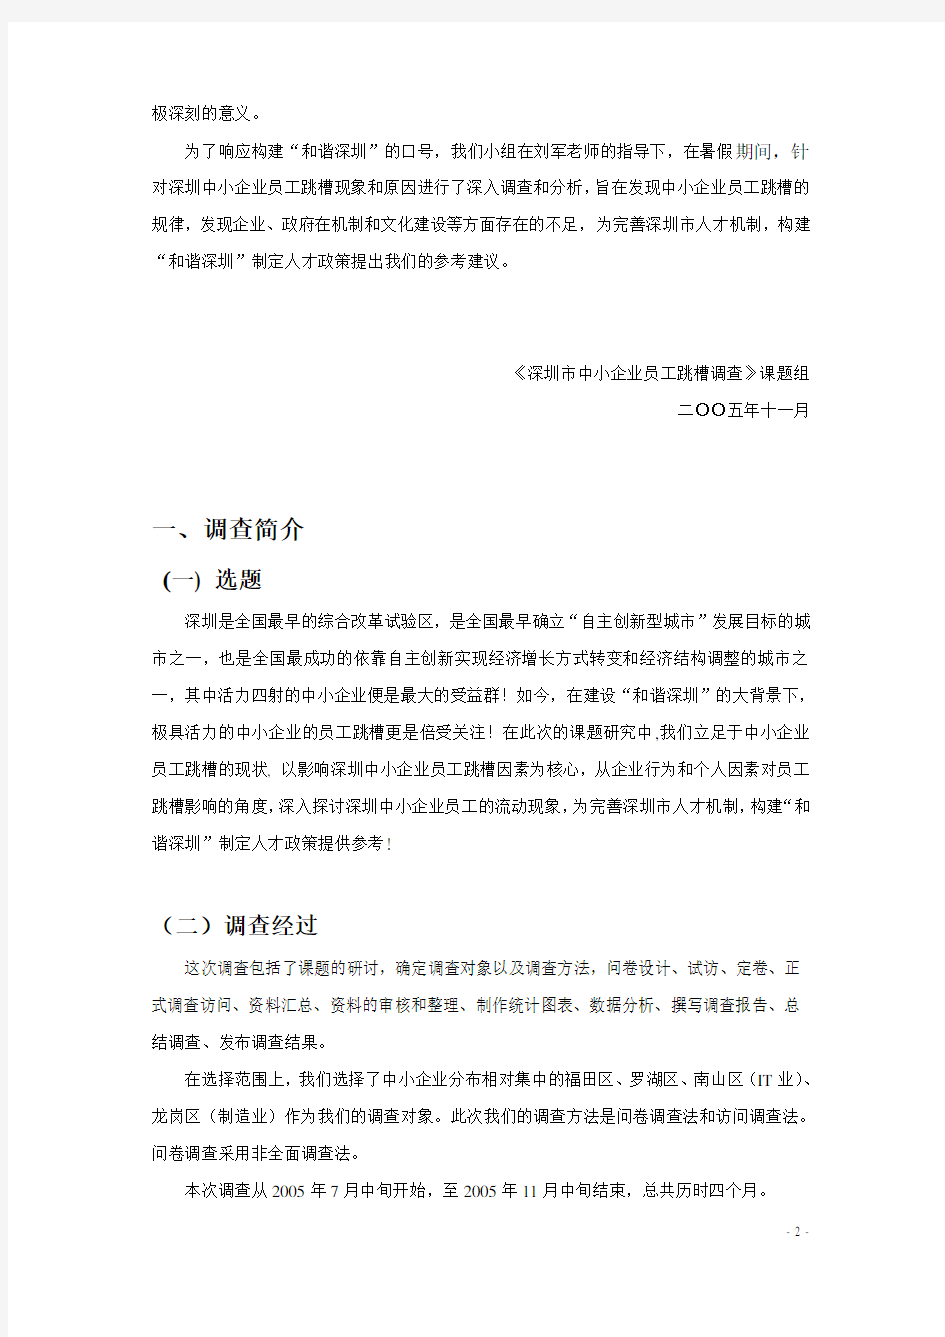 018 深圳中小企业员工跳槽调查分析报告(doc 23)